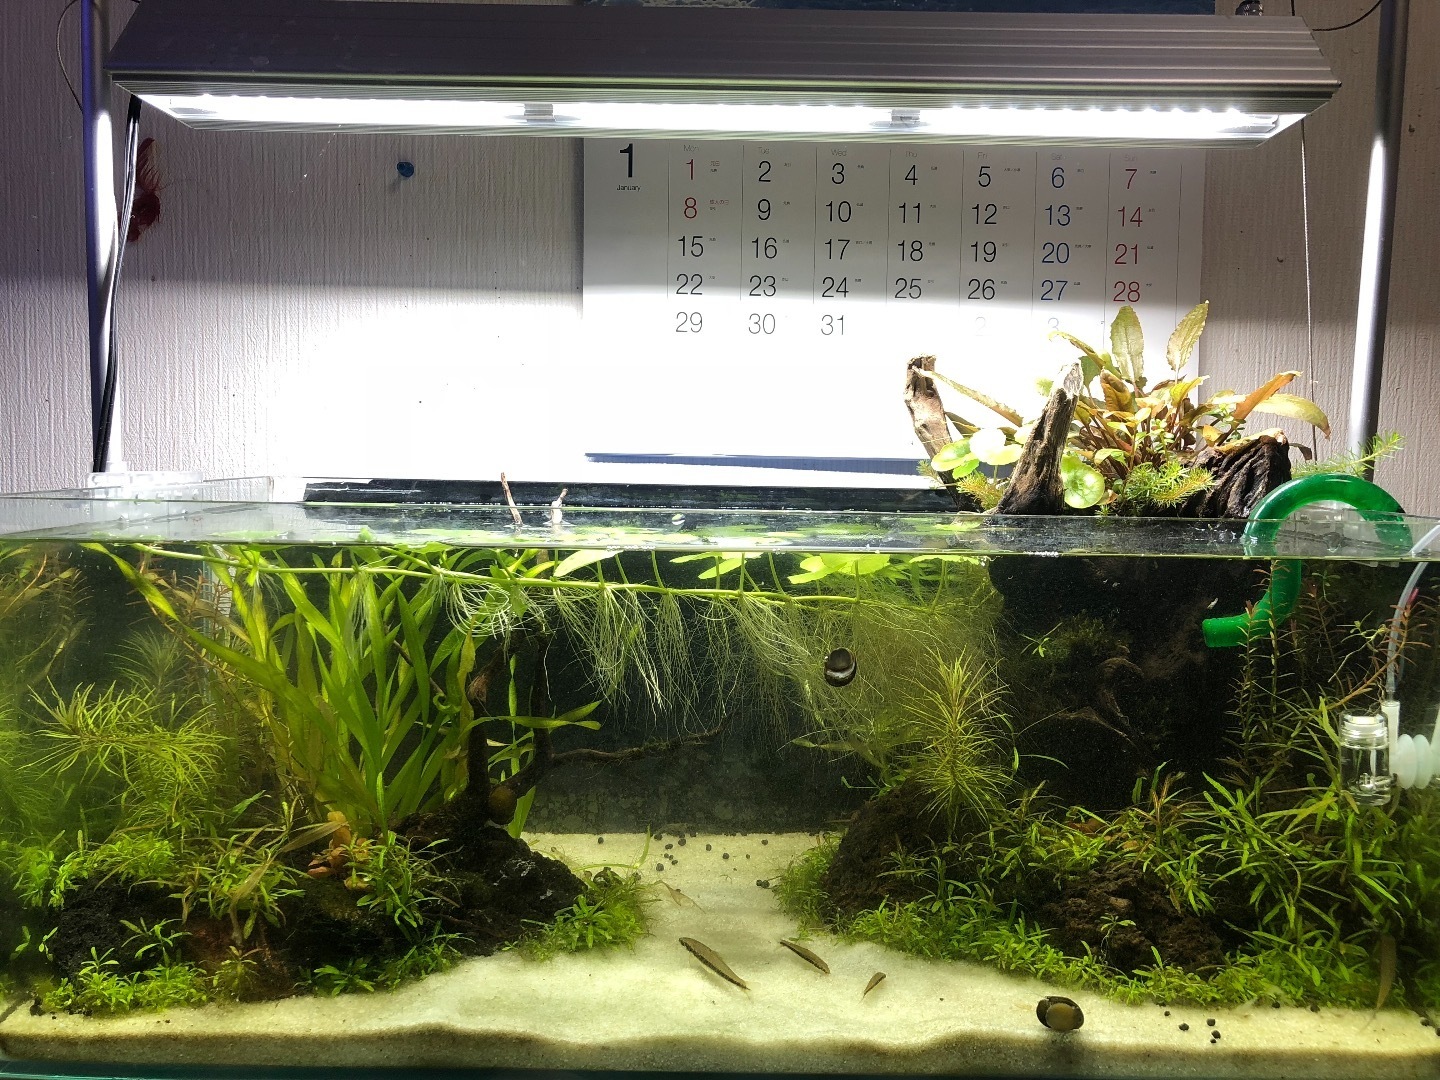 水草レイアウト水槽 水草を植え付けて1ヶ月後のメンテナンス 魚信いざらん らんちゅう アクアリウムブログ